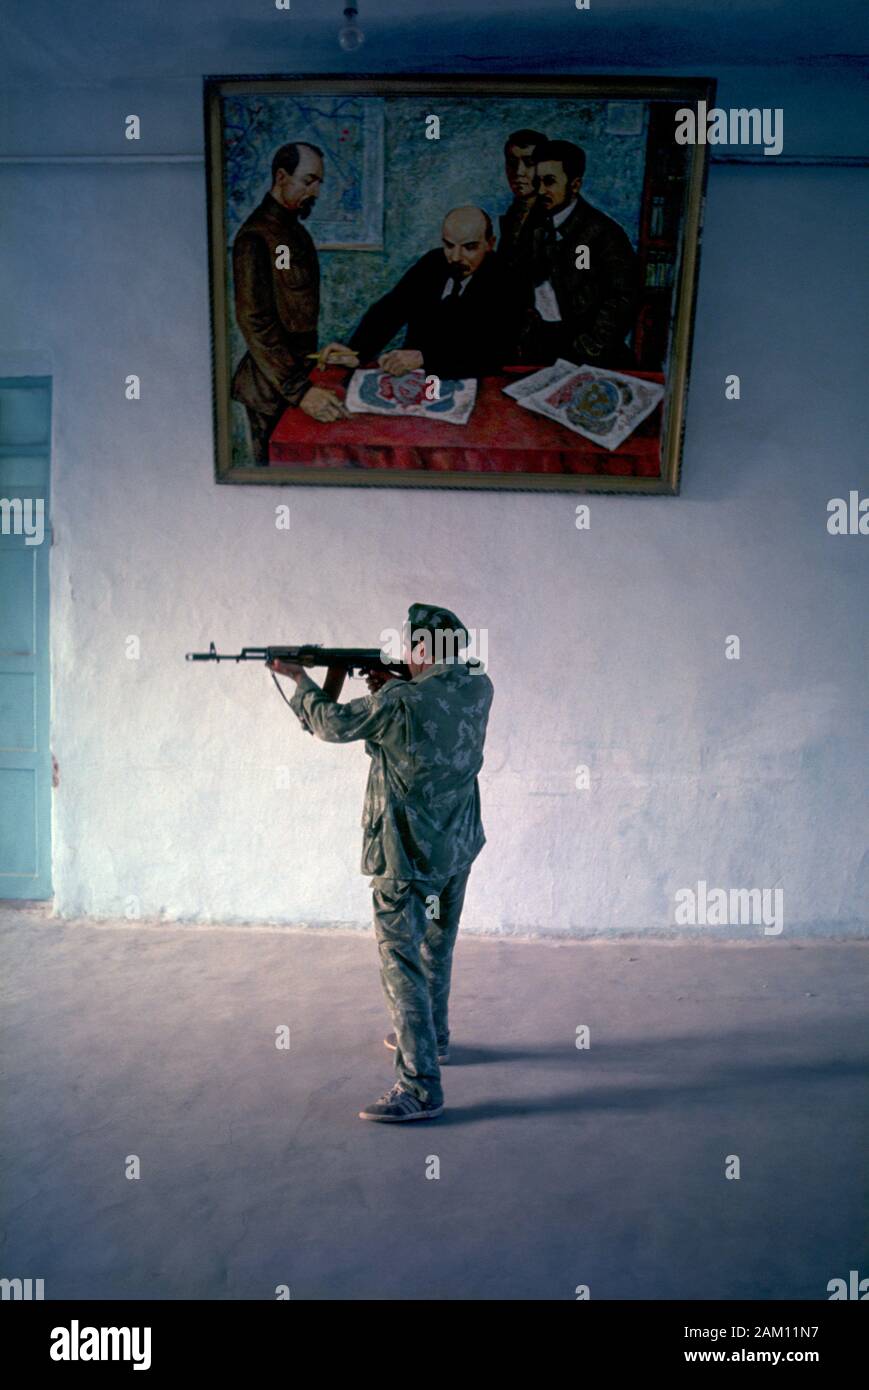 Tadschikistan Soldat an einem der Eingänge zum CIS Border Patrol Basis in Pyandzh, Tadschikistan. Der Soldat ist, eine Kalaschnikow Gewehr an der Basis Tür und stehen unter einer alten sowjetischen Malerei zeigt, dass Wladimir Lenin und Feliks Dzierzynski und andere bolschewiki an einem Tisch. Stockfoto